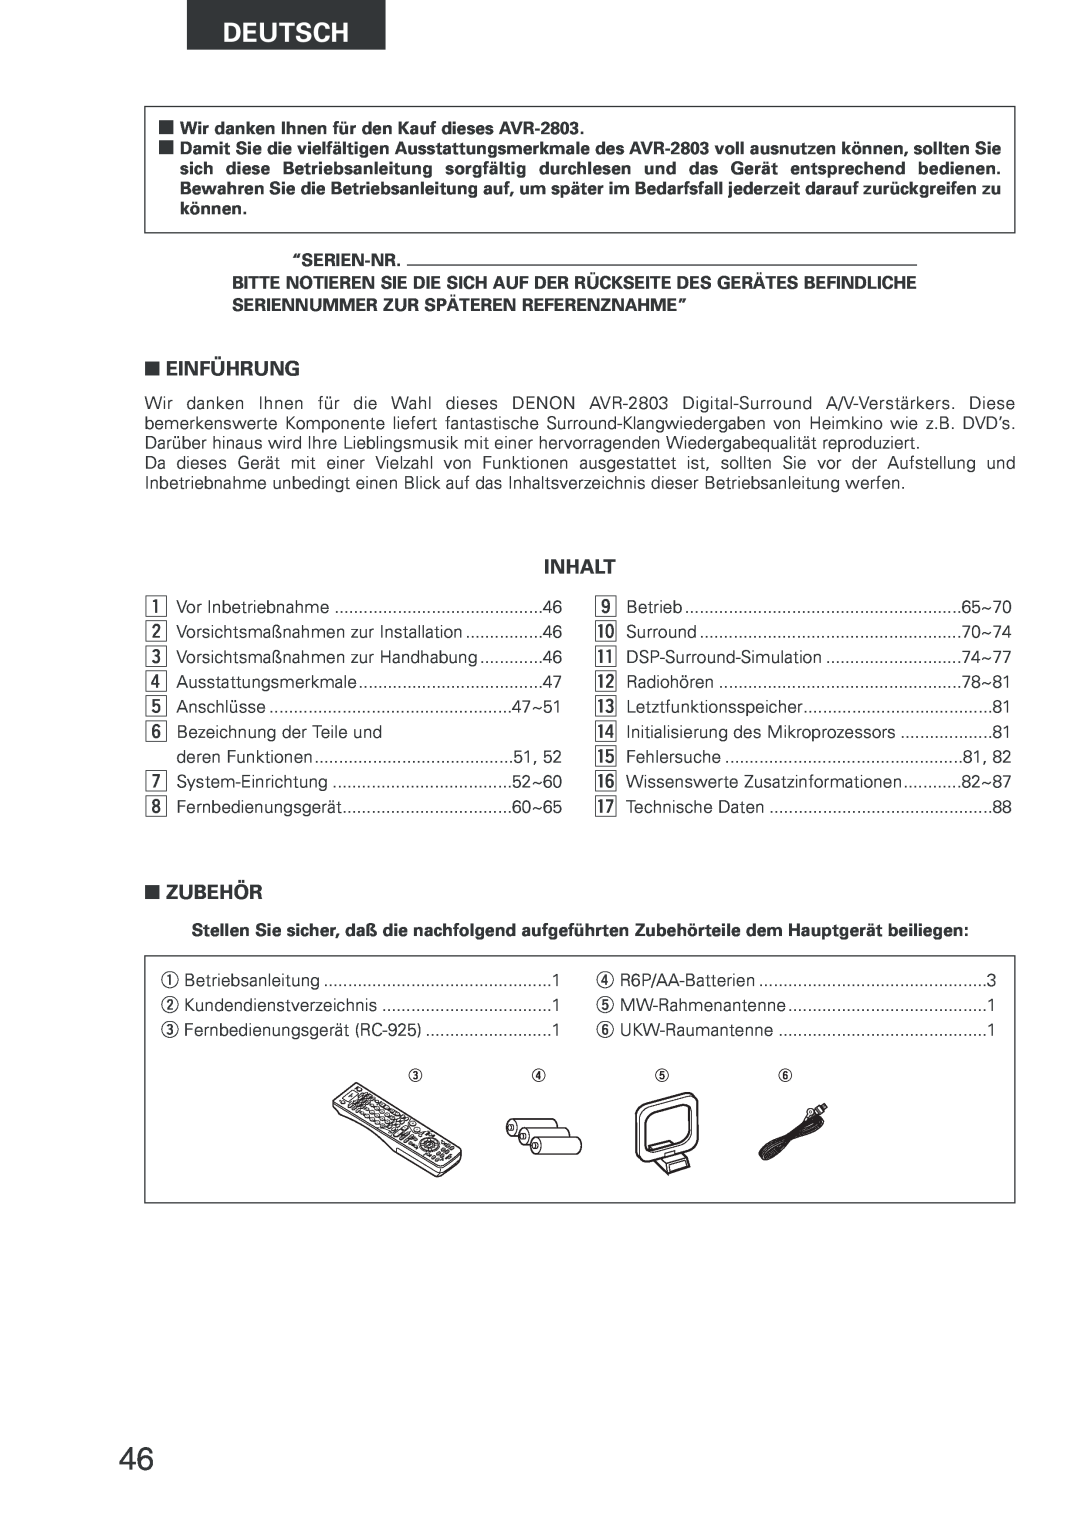 Denon manual Deutsch, Einführung, Inhalt, Zubehör, Wir danken Ihnen für den Kauf dieses AVR-2803, “Serien-Nr 